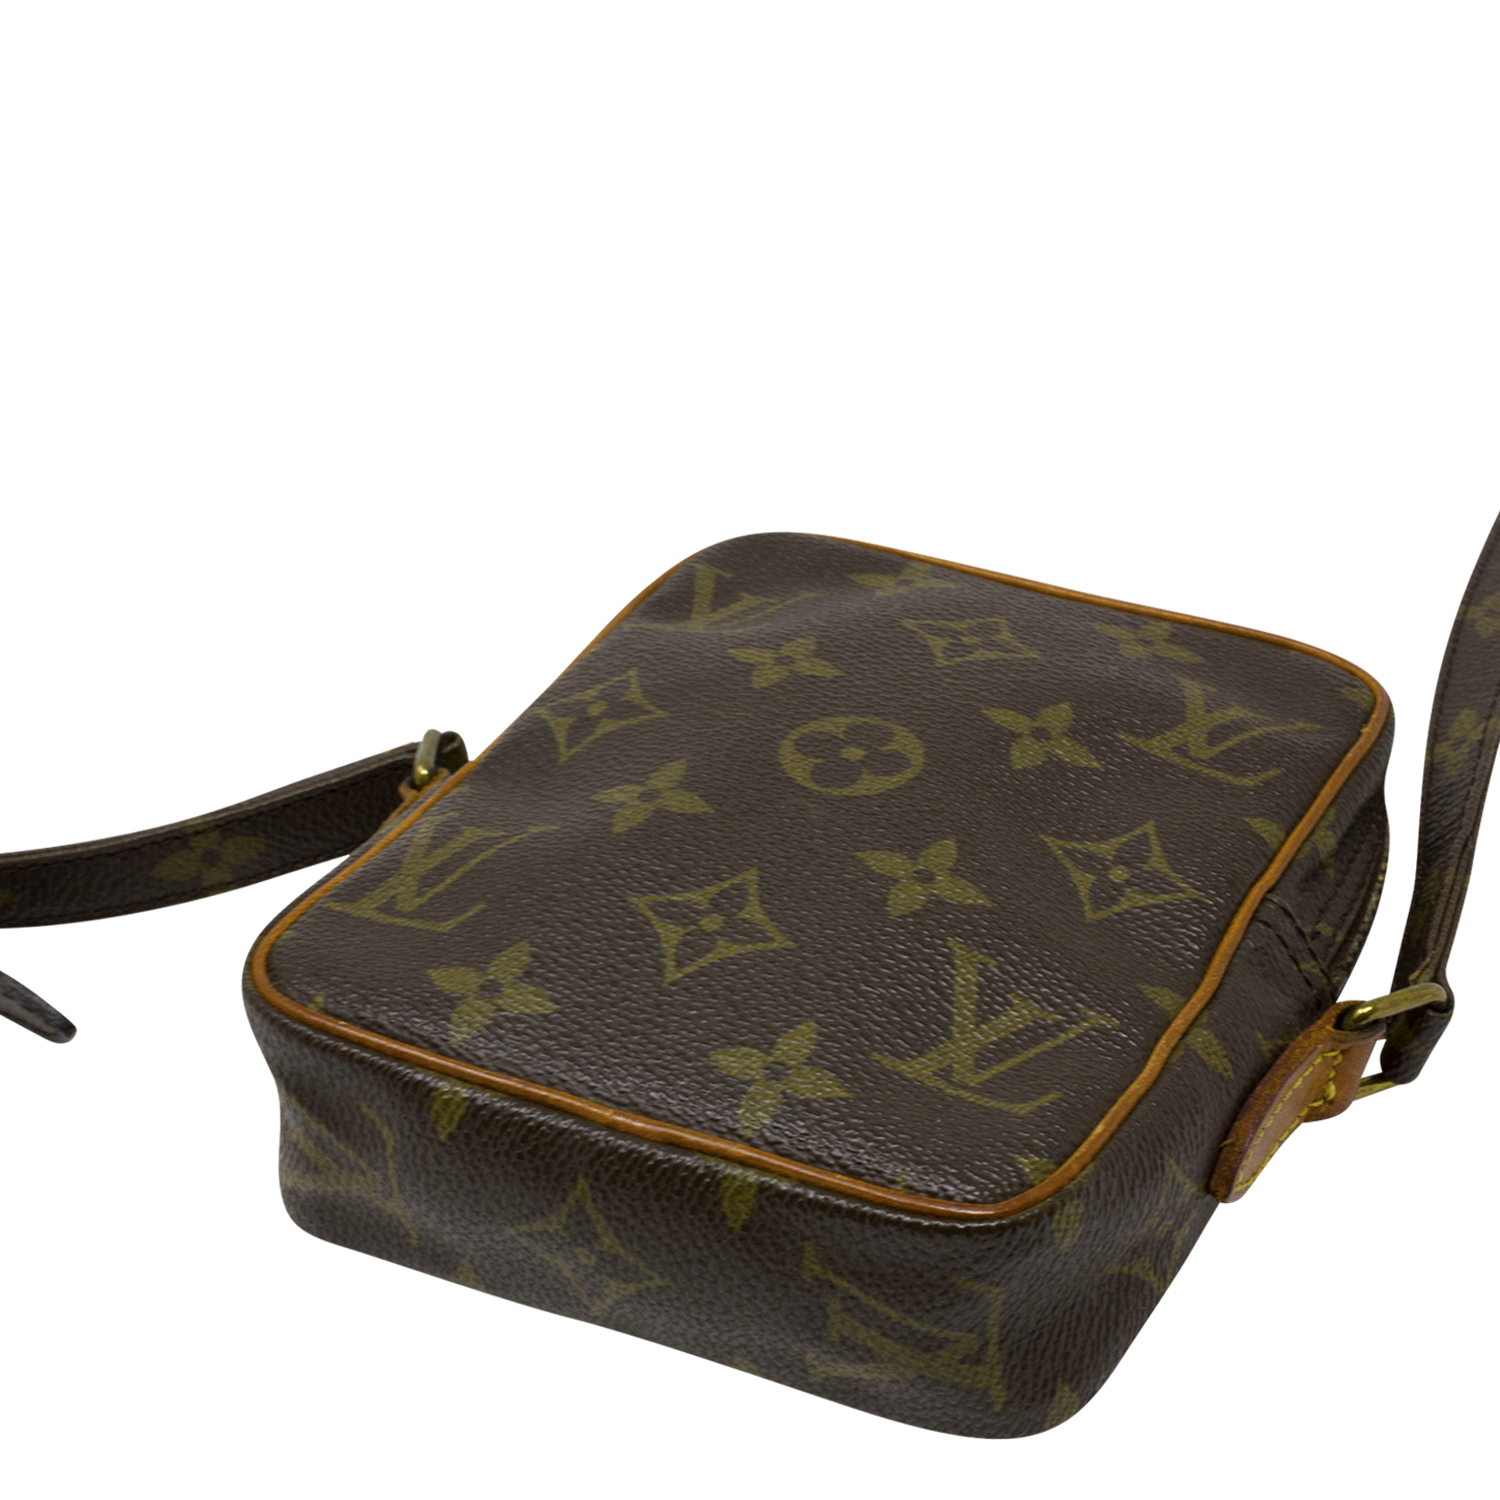 Louis Vuitton Monogram Mini Danube - Brown Mini Bags, Handbags